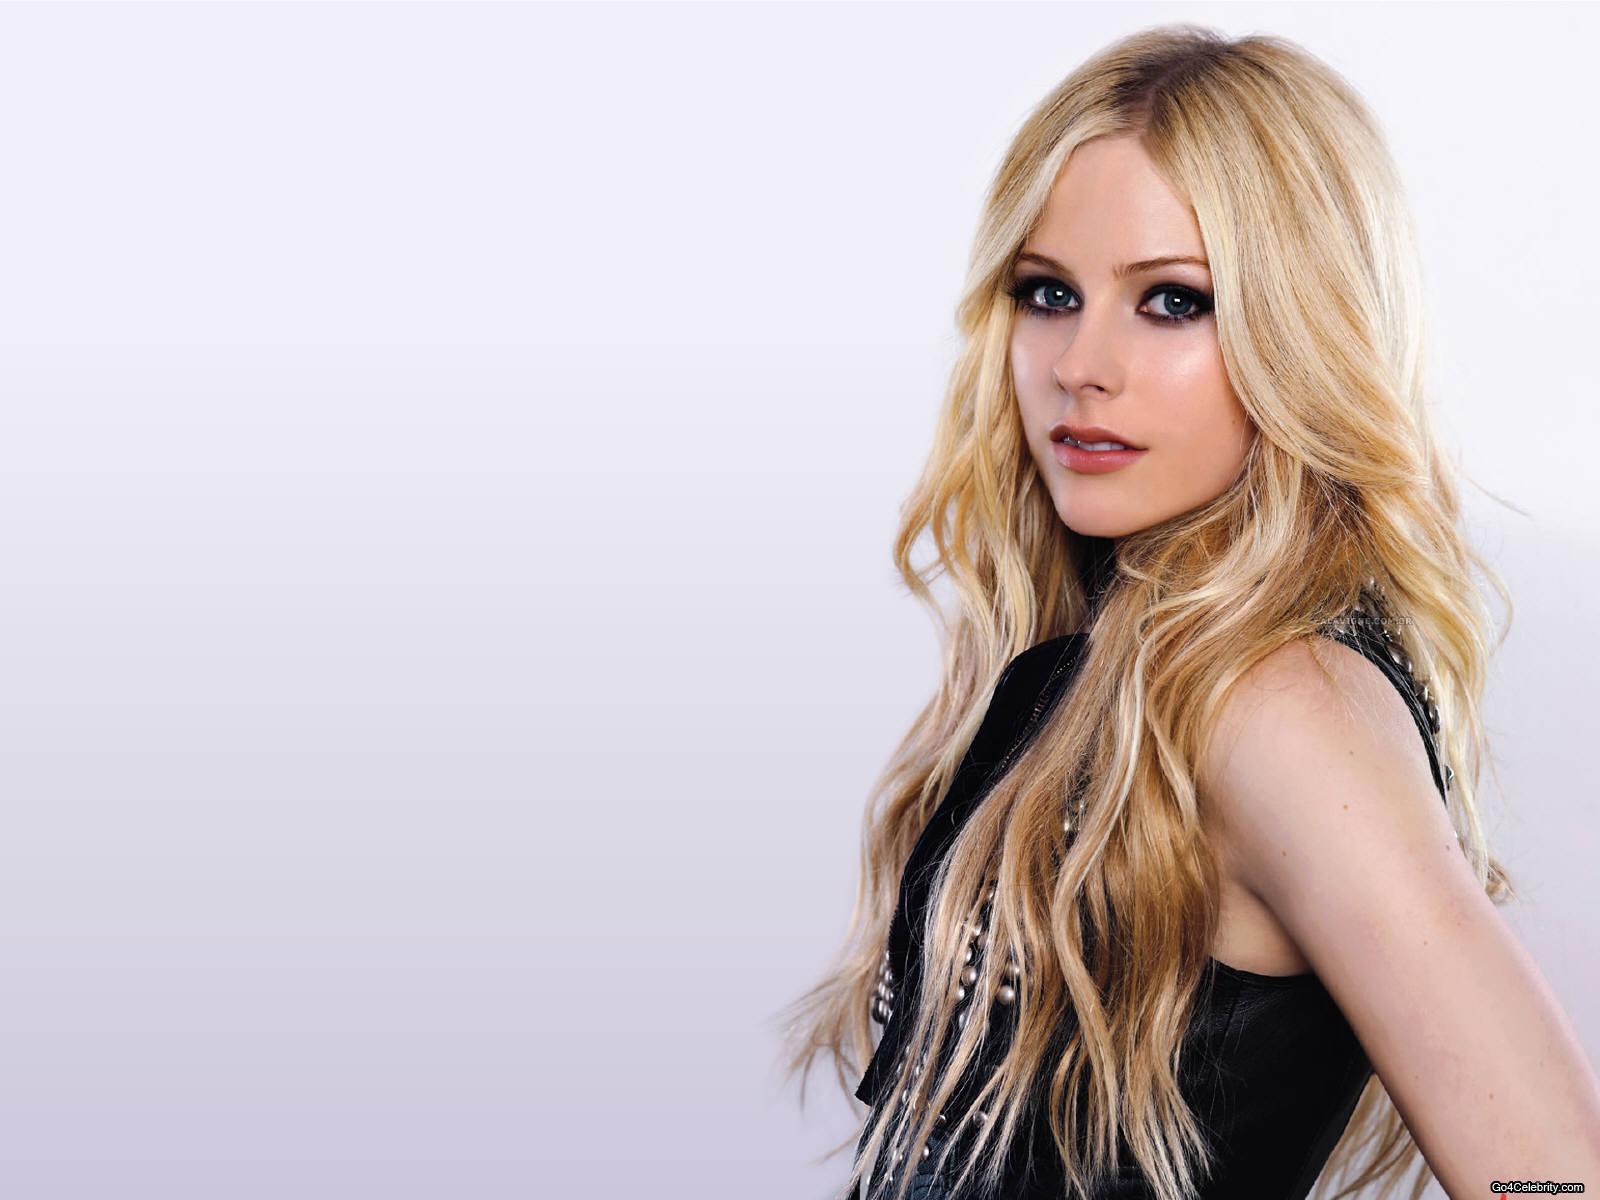 Avril Lavigne Wallpaper HD 20975 Image. wallgraf